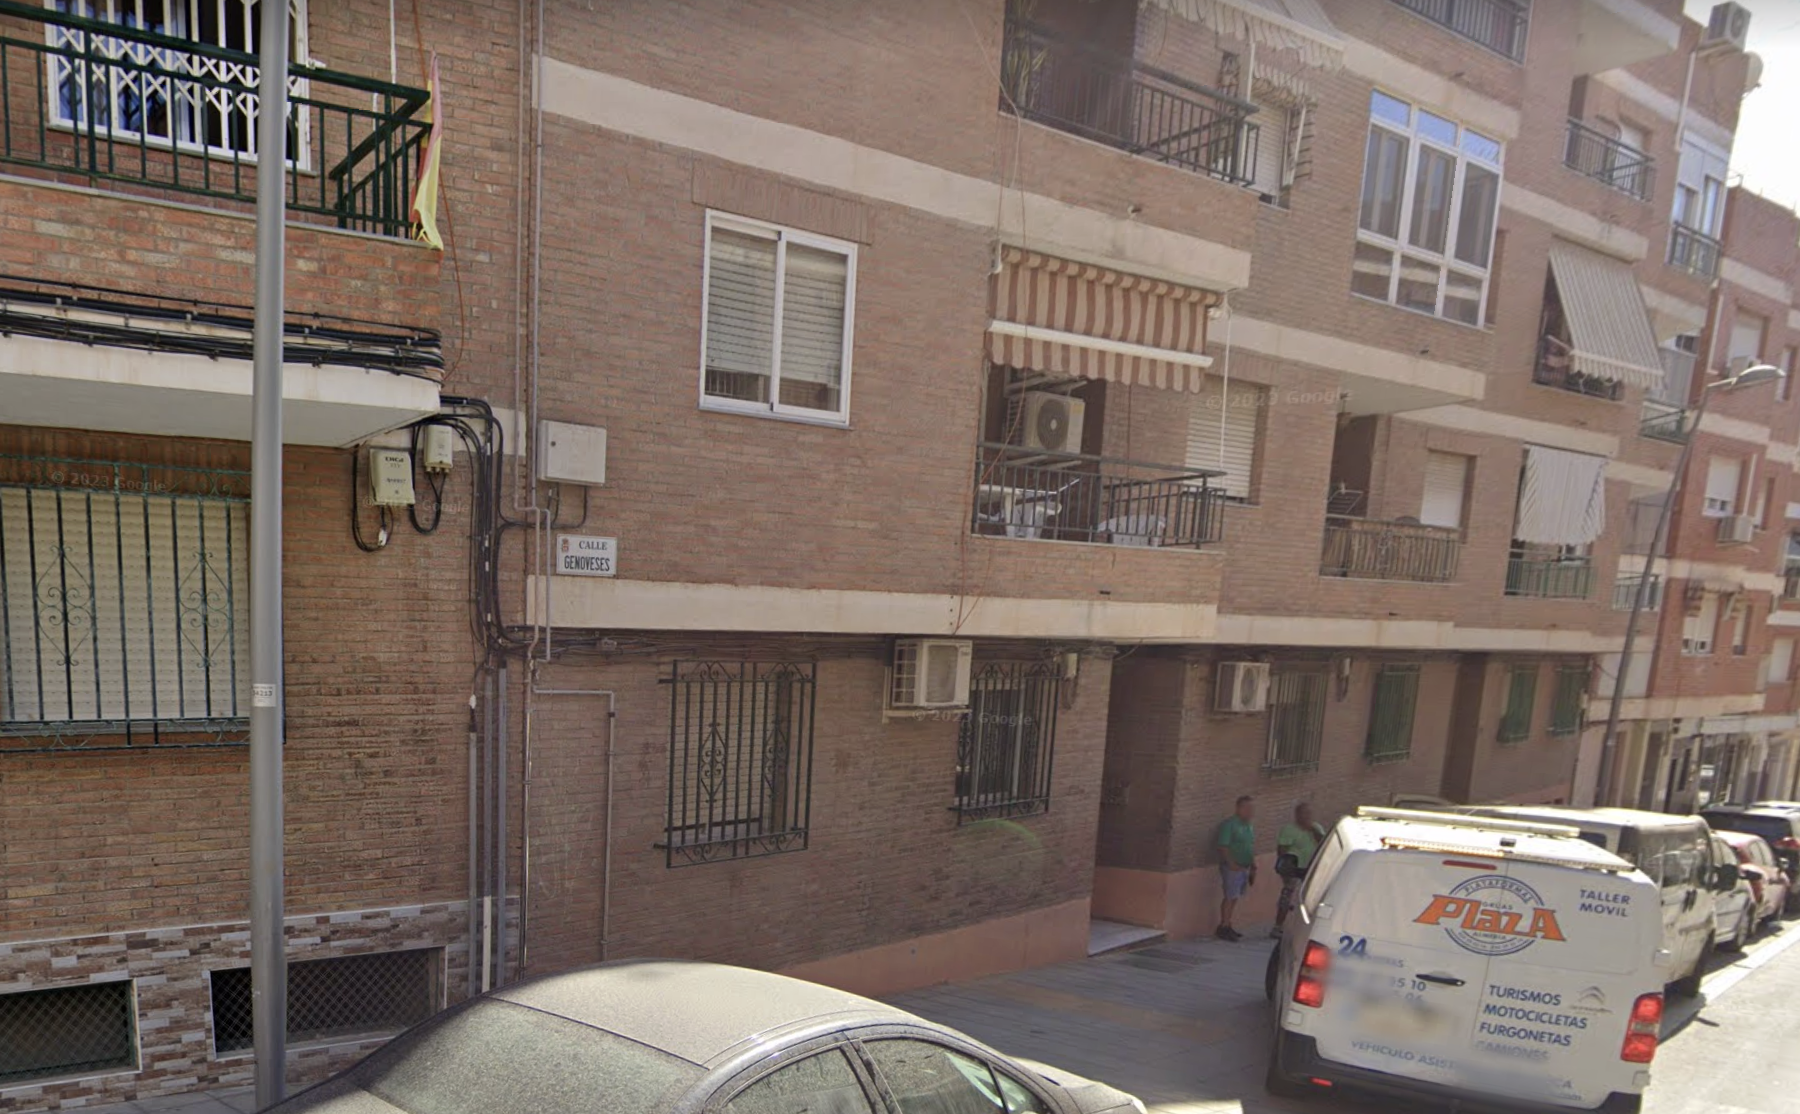 Zona donde se produjo la agresión en Almería, en una imagen de 'Google Maps'.